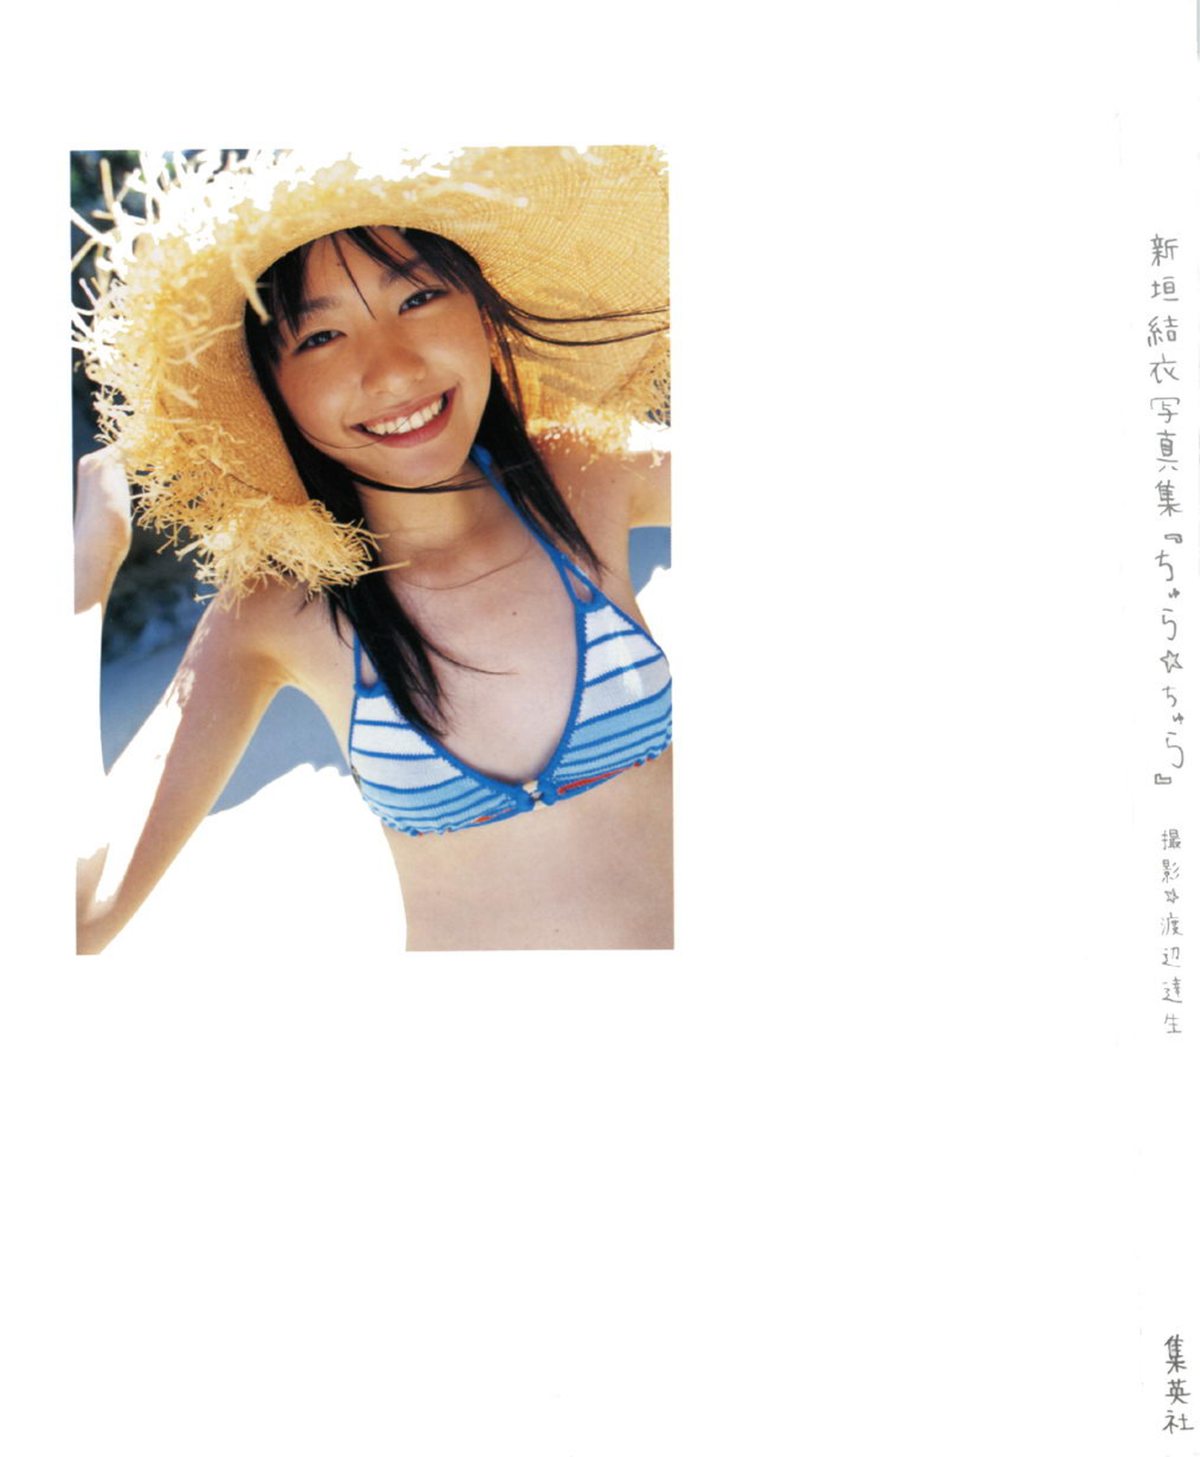 Photobook Yui Aragaki 新垣結衣 Chura Chura ちゅら ちゅら 2006 03 03 0003 4458383826.jpg